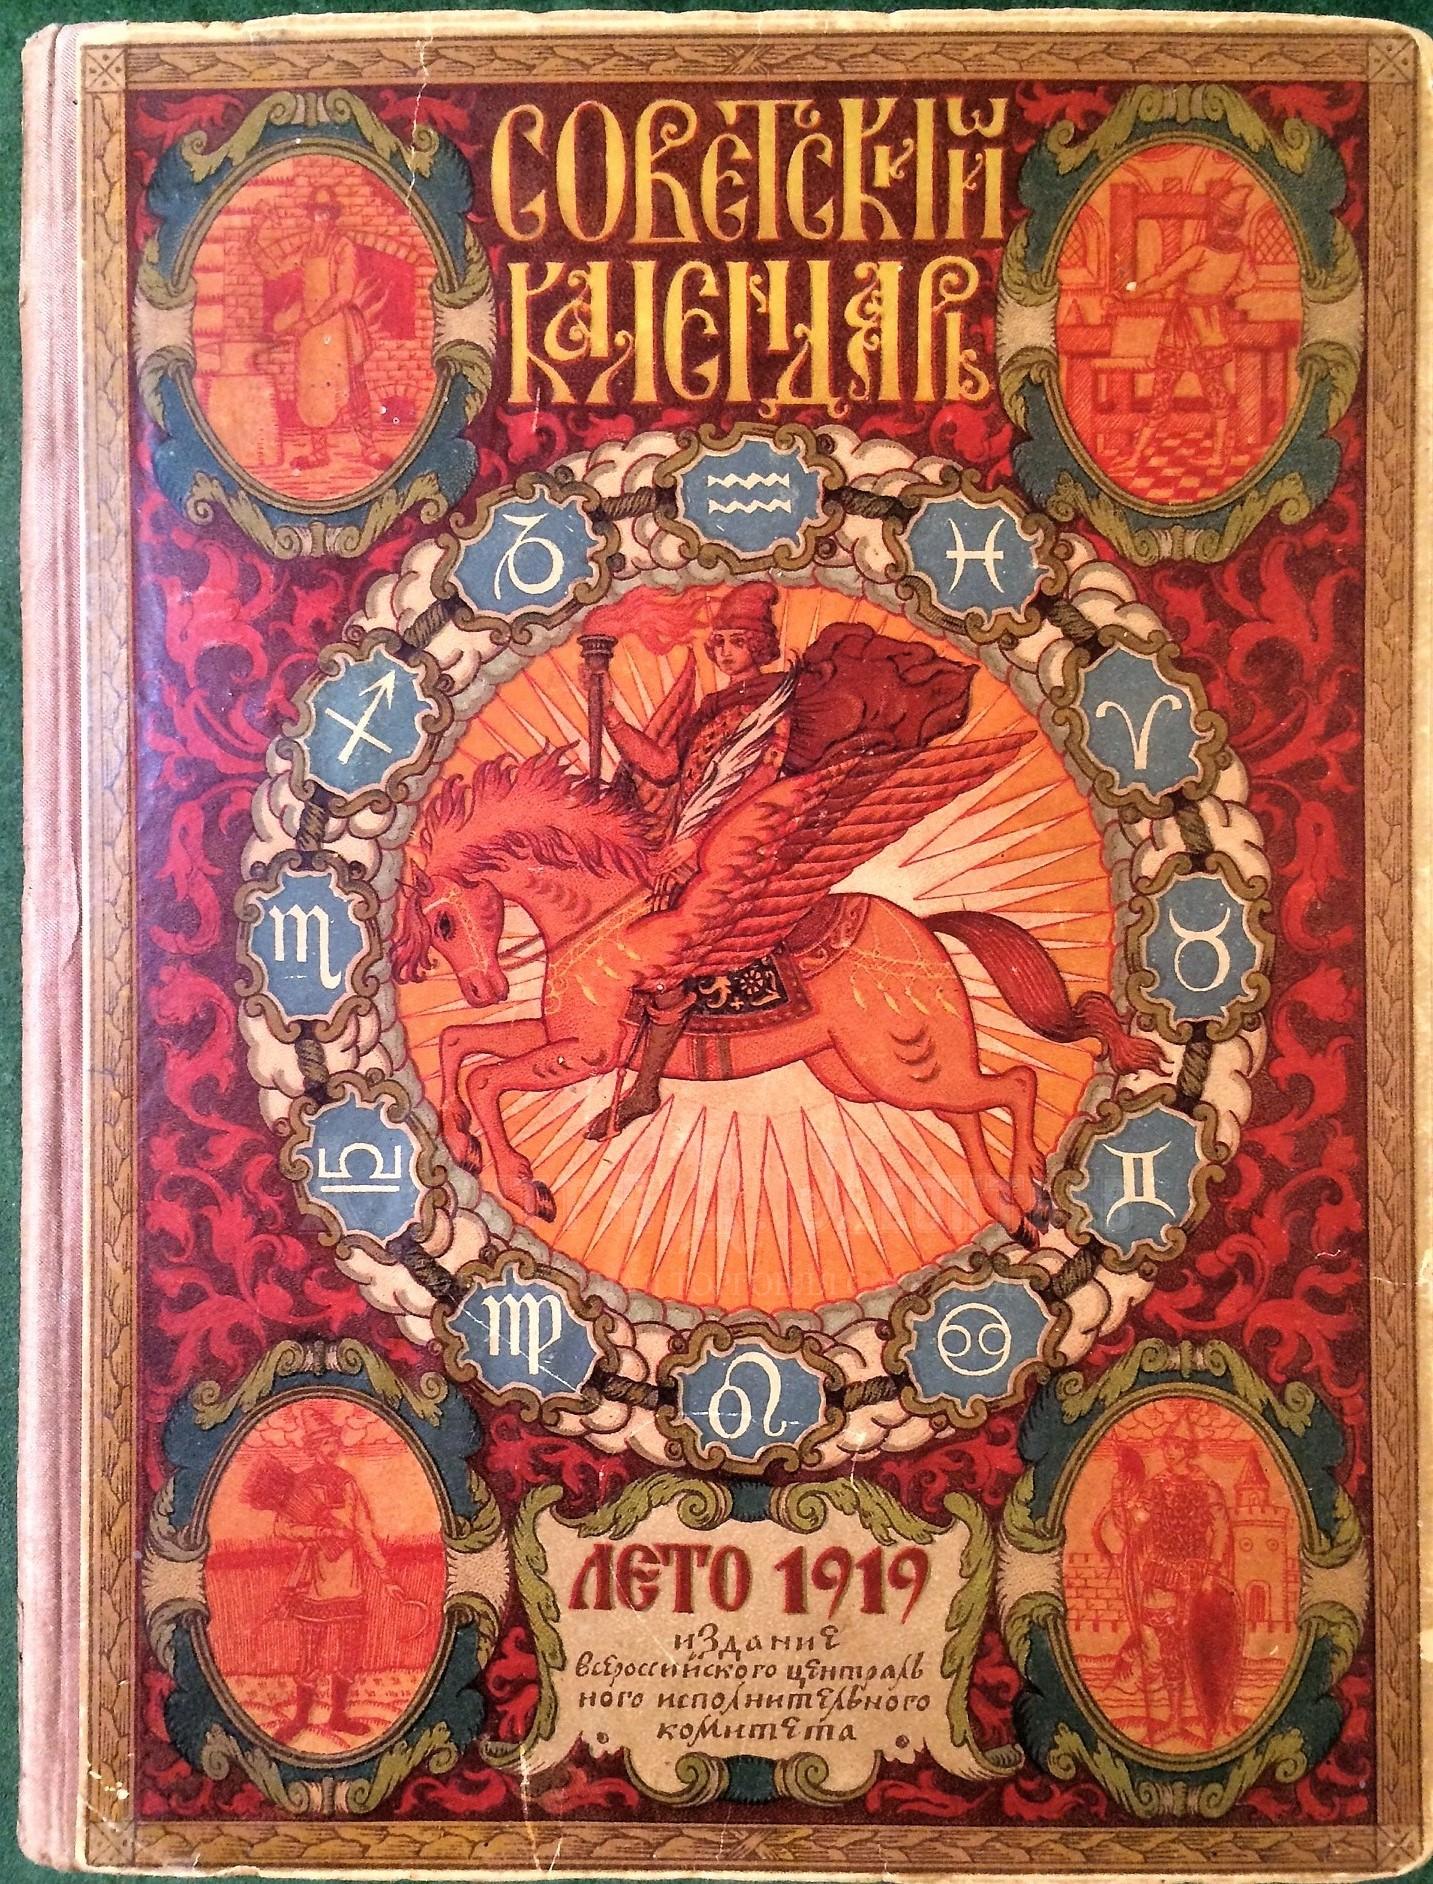 Советский календарь на 1919 год. 